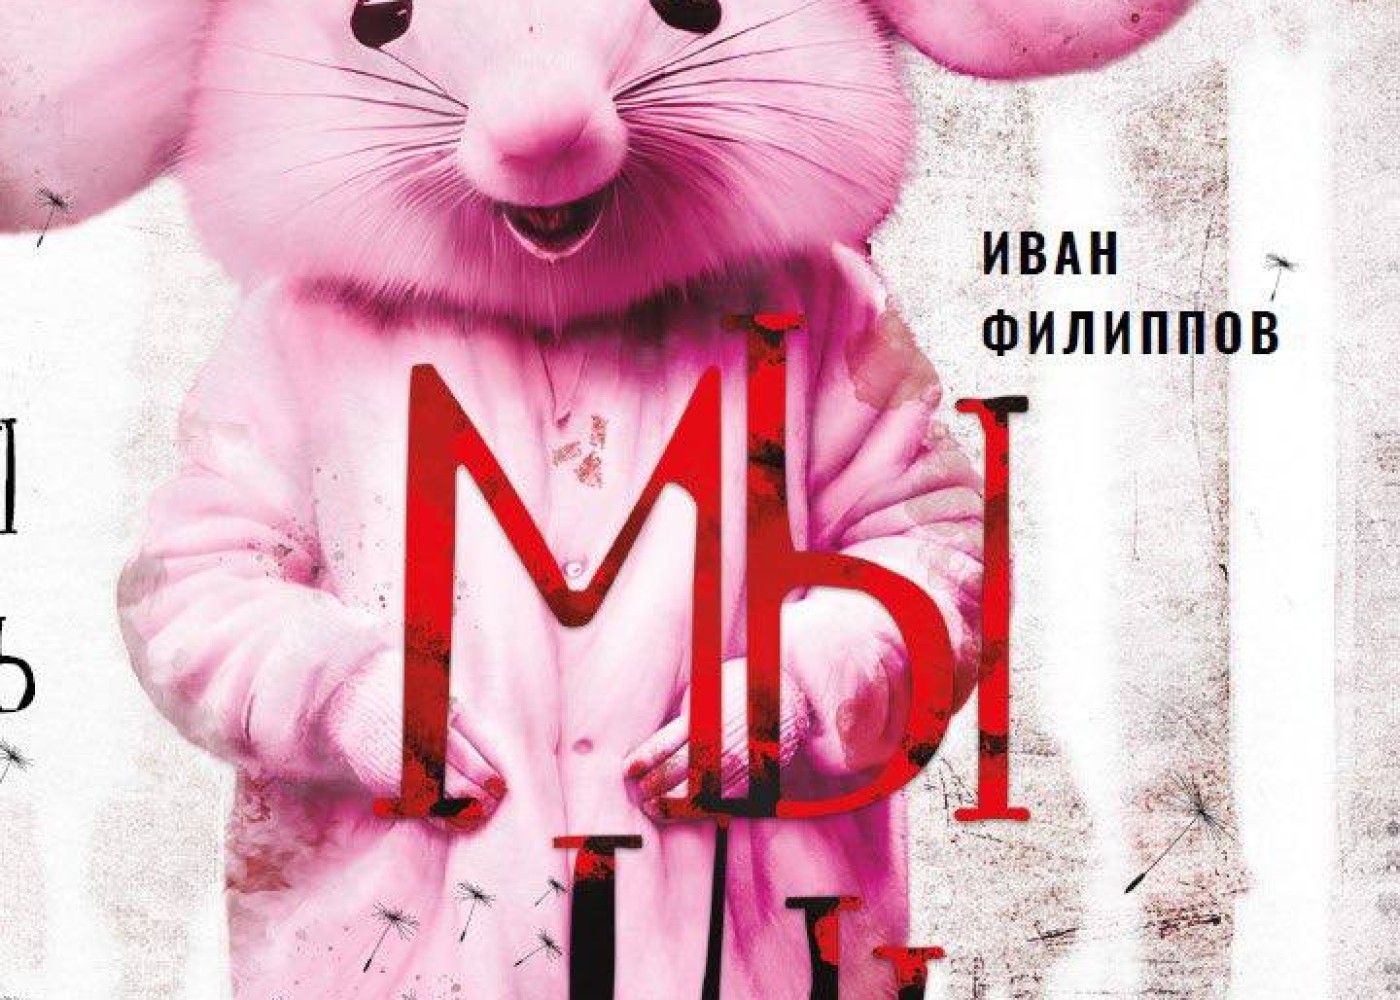 Putin və Simonyanın "öldürüldüyü" kitab satışdan yığışdırılır